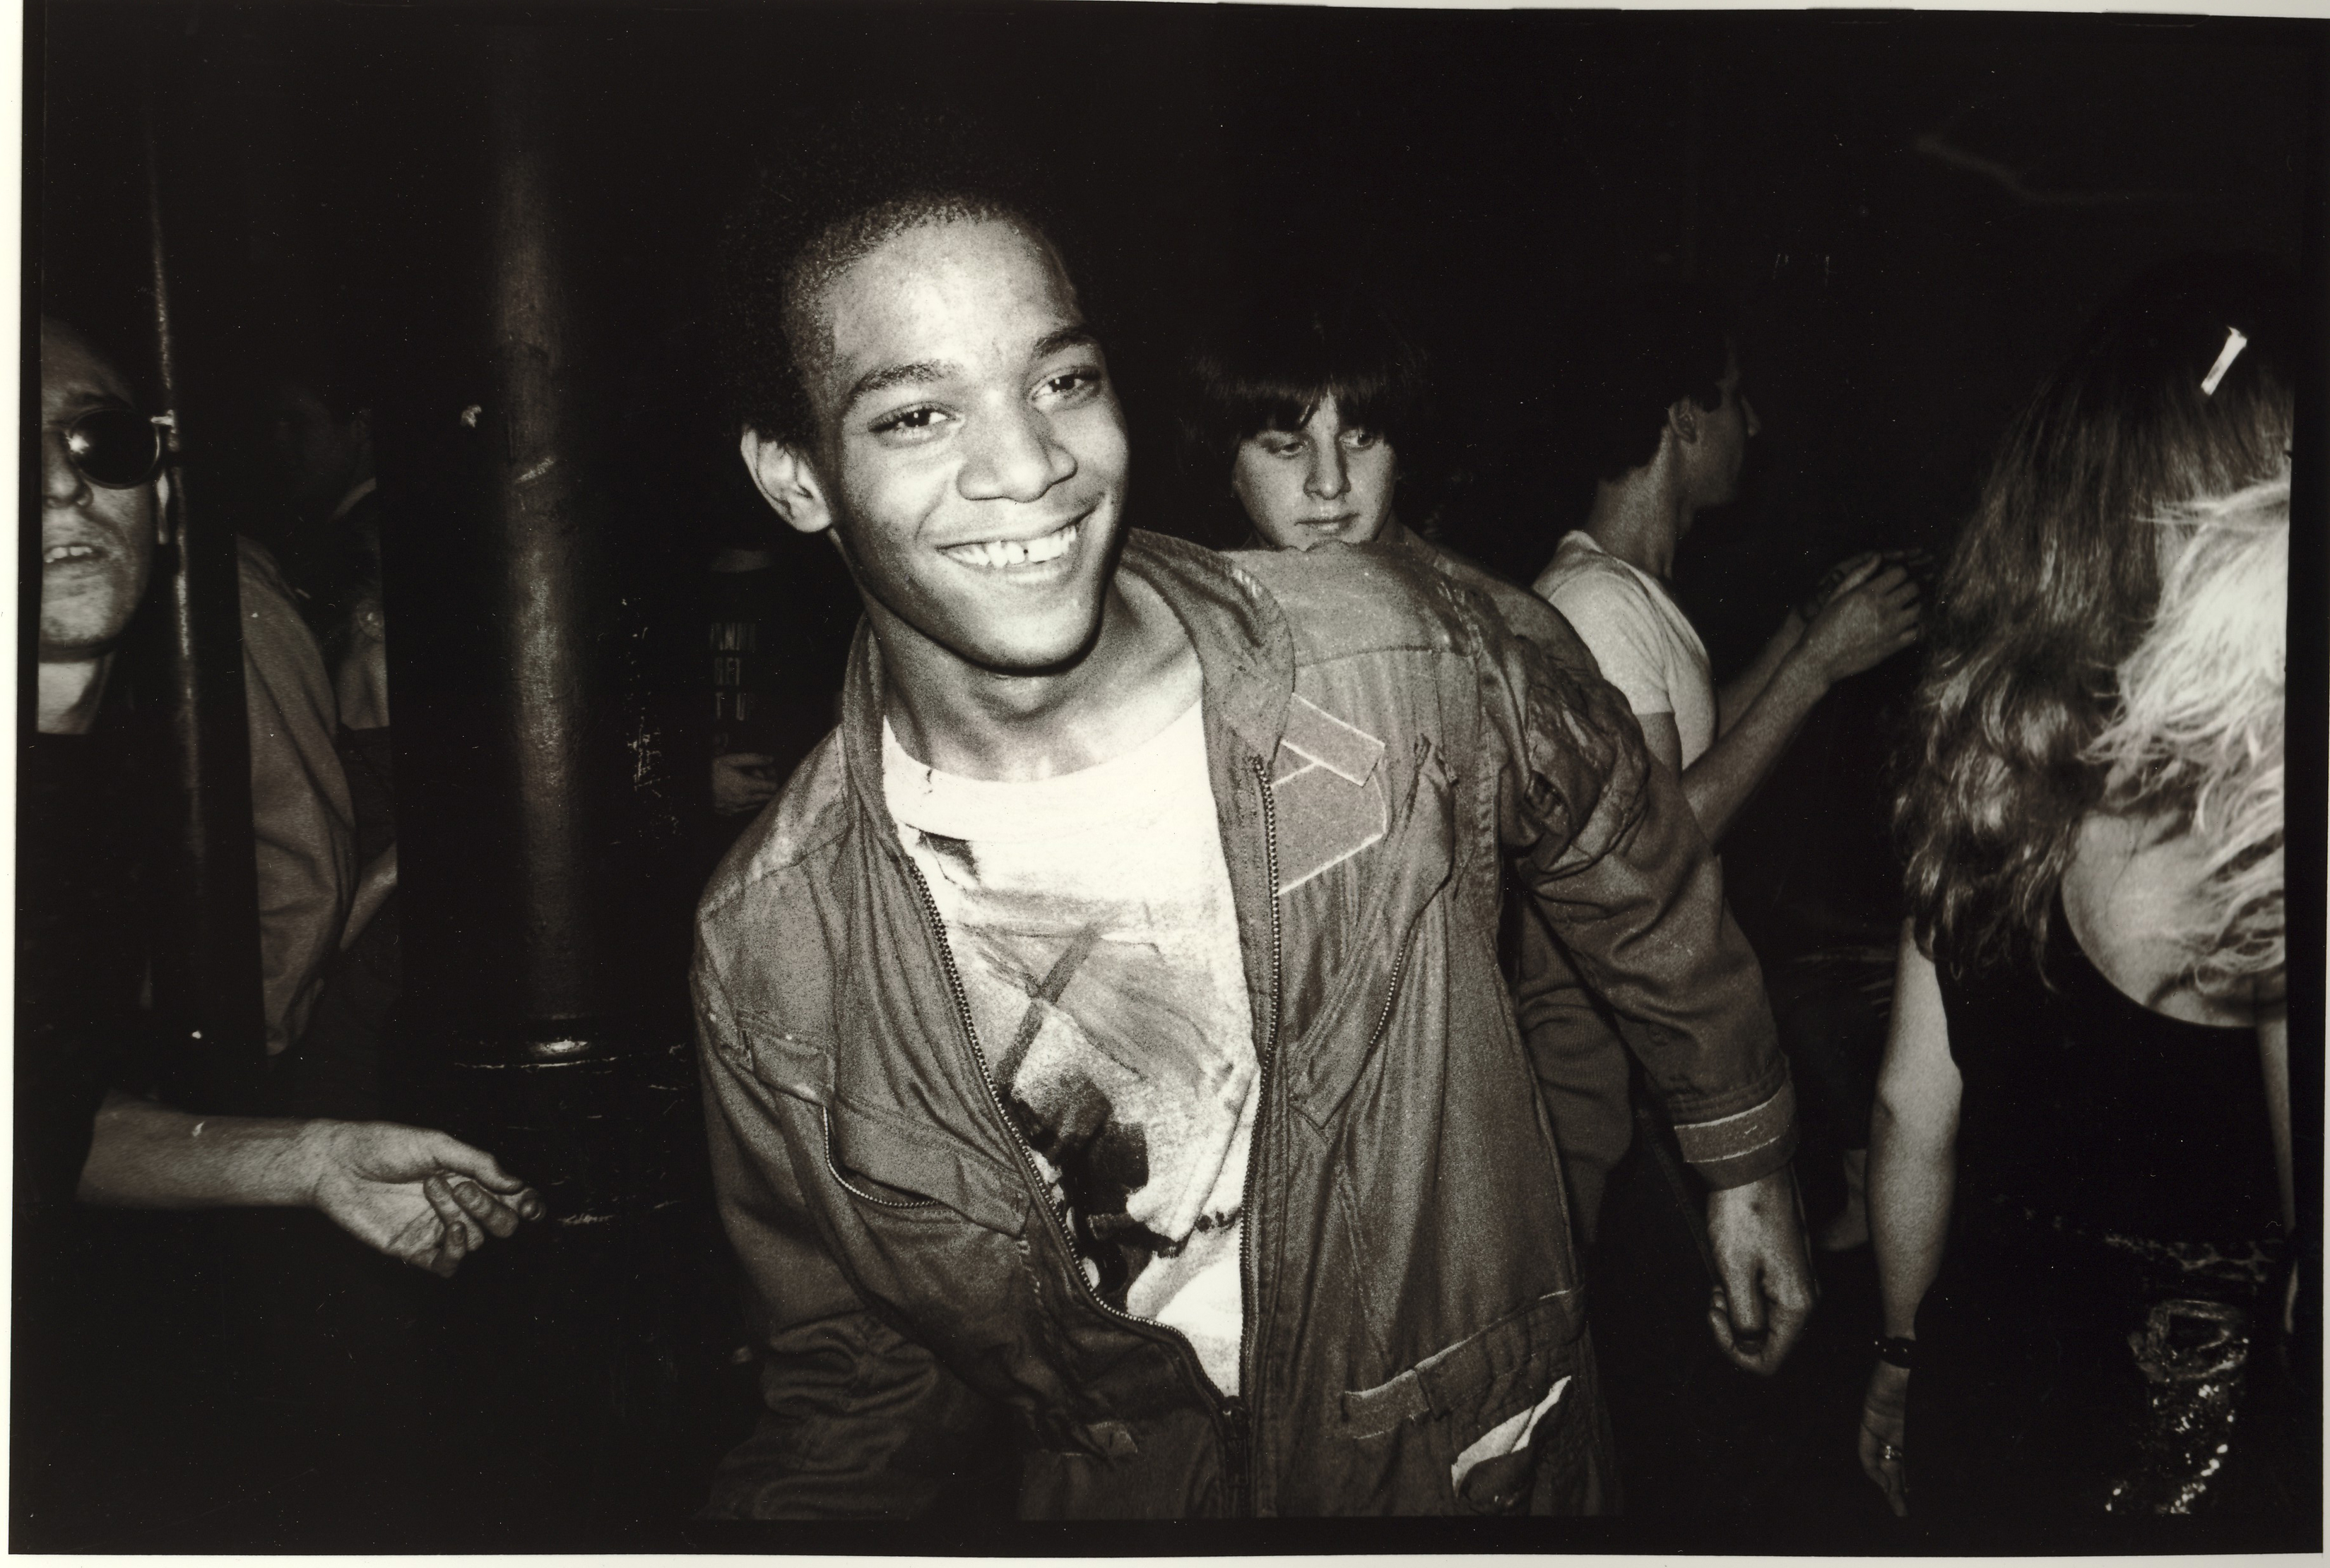 Back to Basquiat, still